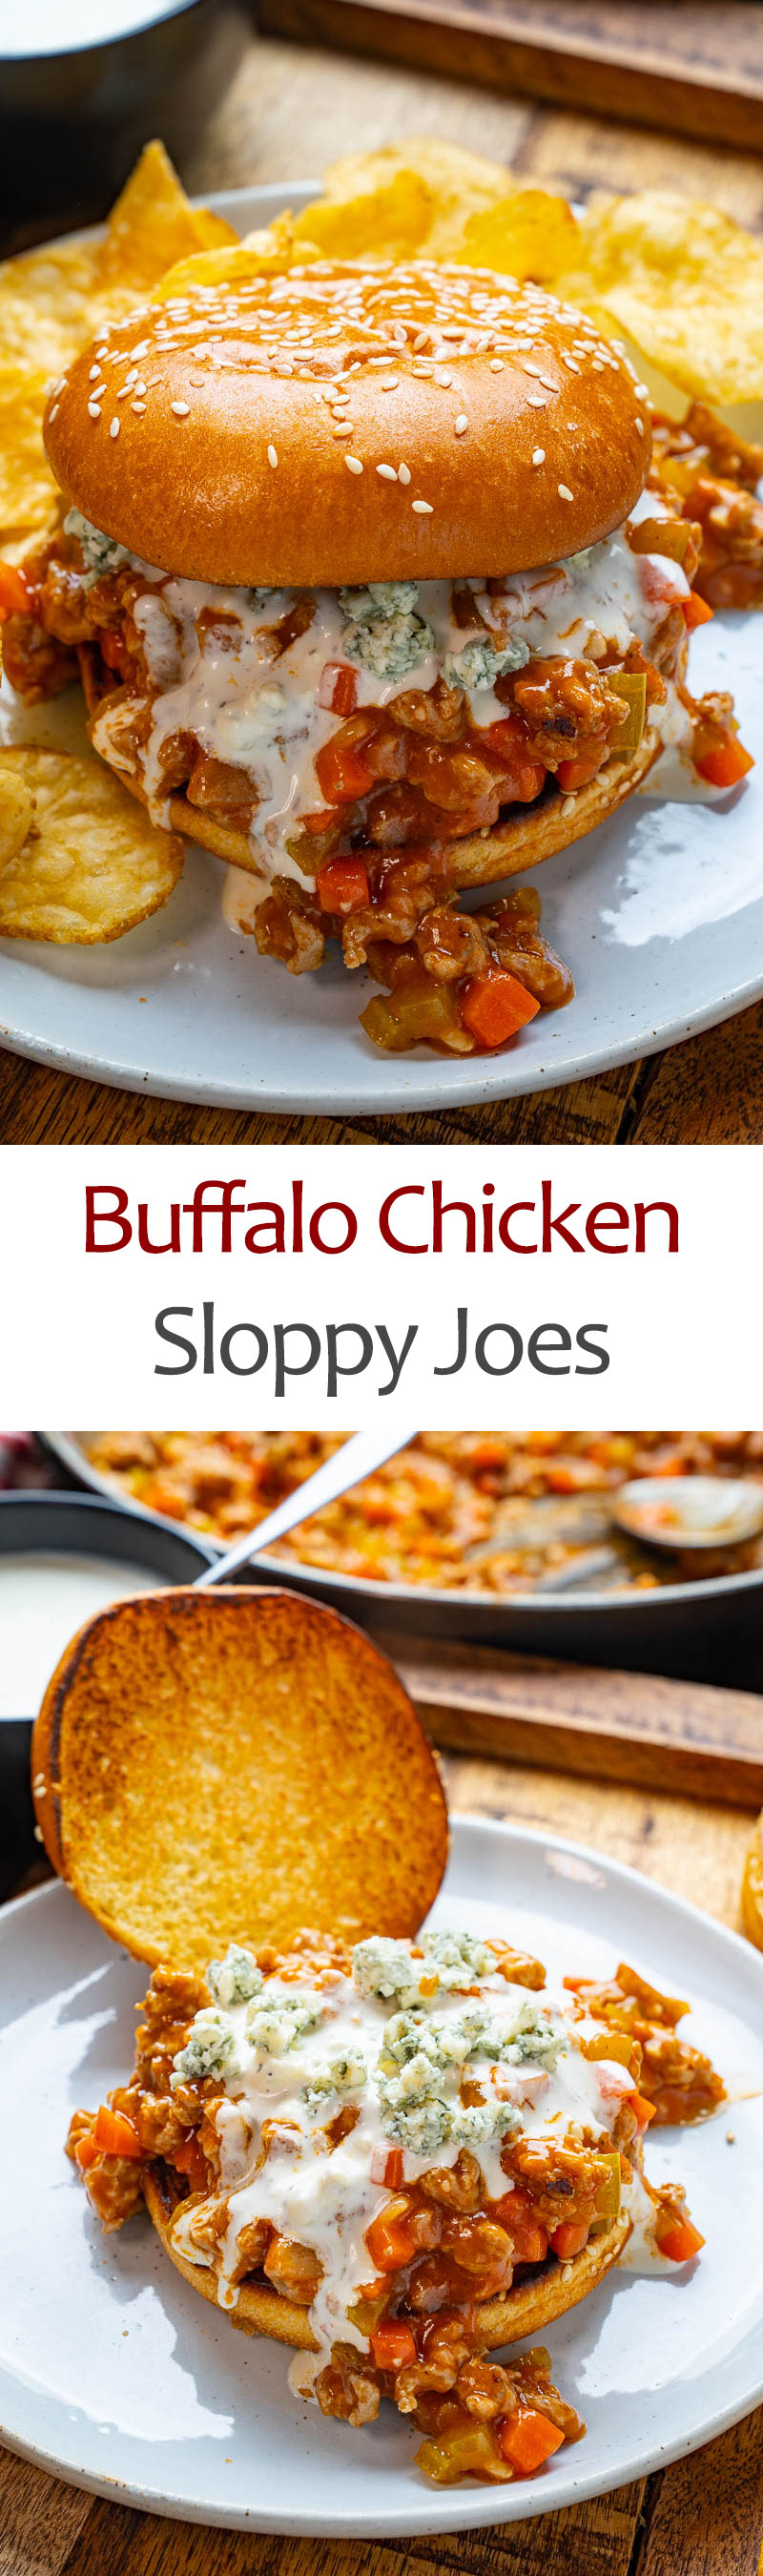 Buffalo Chicken Sloppy Joes